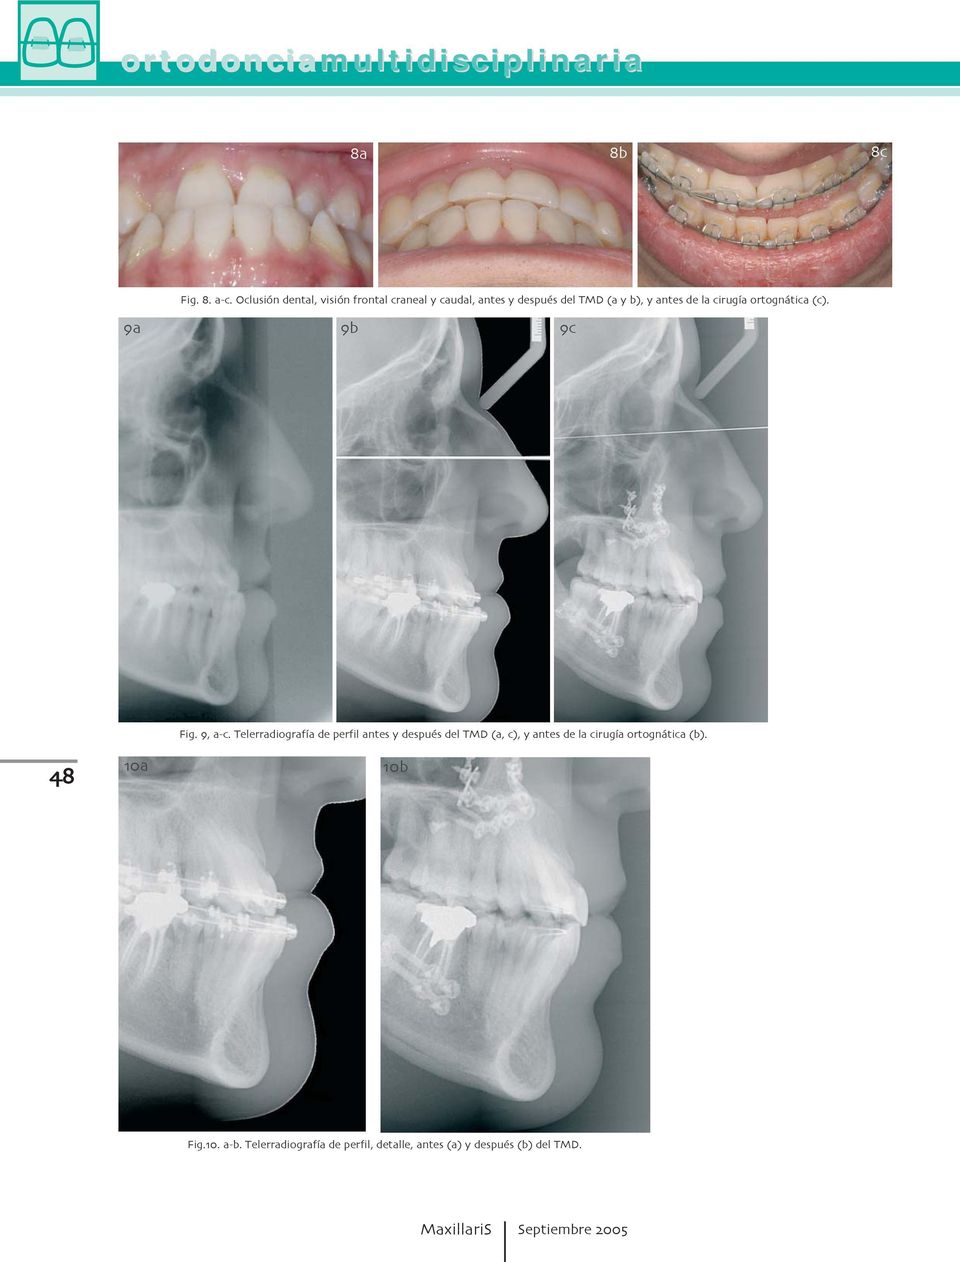 de perfil antes y después del TMD (a c) y antes de la cirugía ortognática